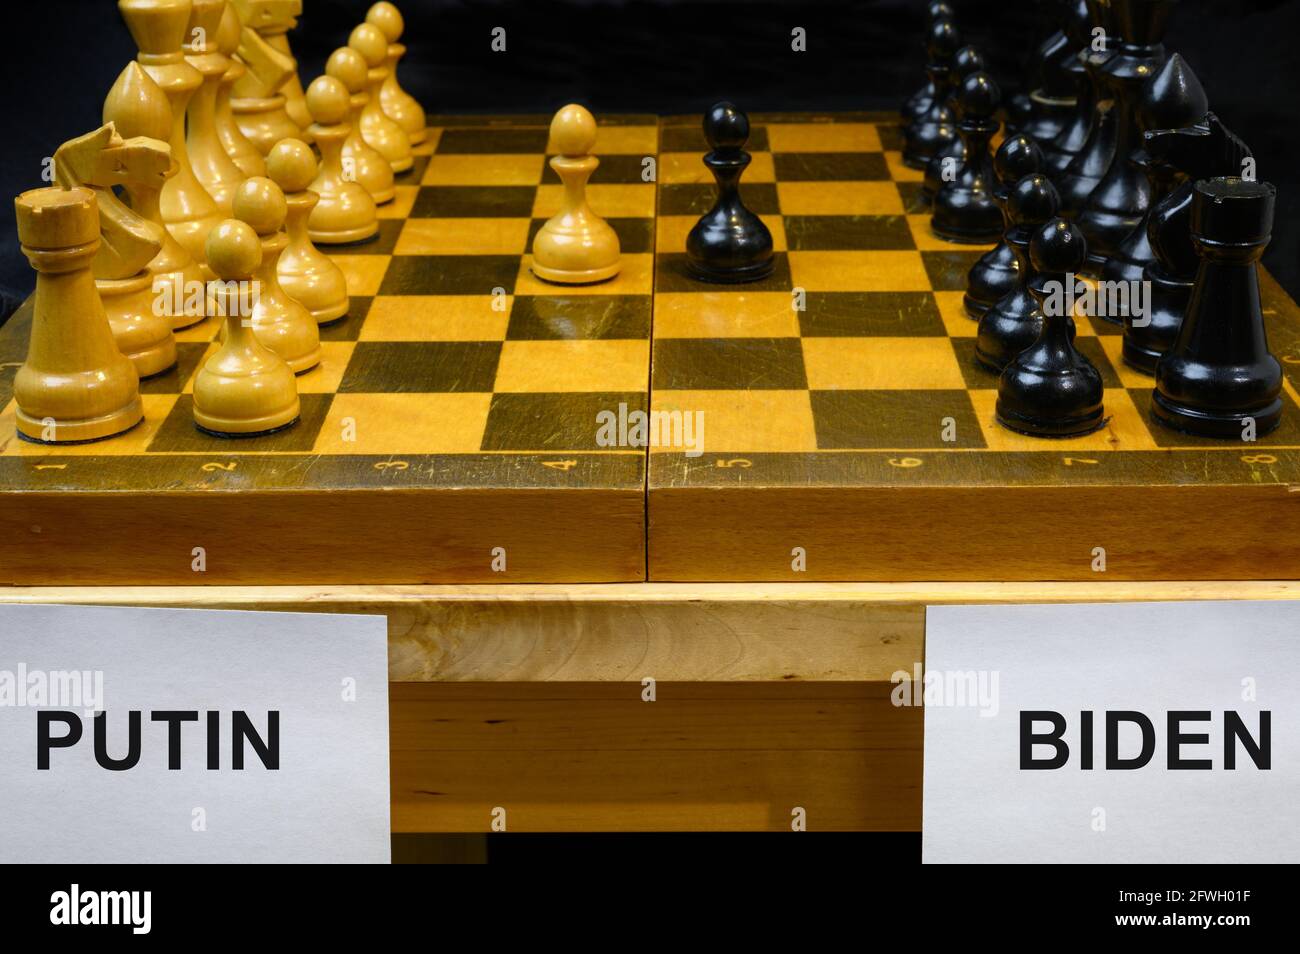 Russie vs Etats-Unis, jeu d'échecs comme la géopolitique. Les noms de Poutine et Biden par échiquier. Concept de sommet, tension politique, guerre économique, sancti Banque D'Images